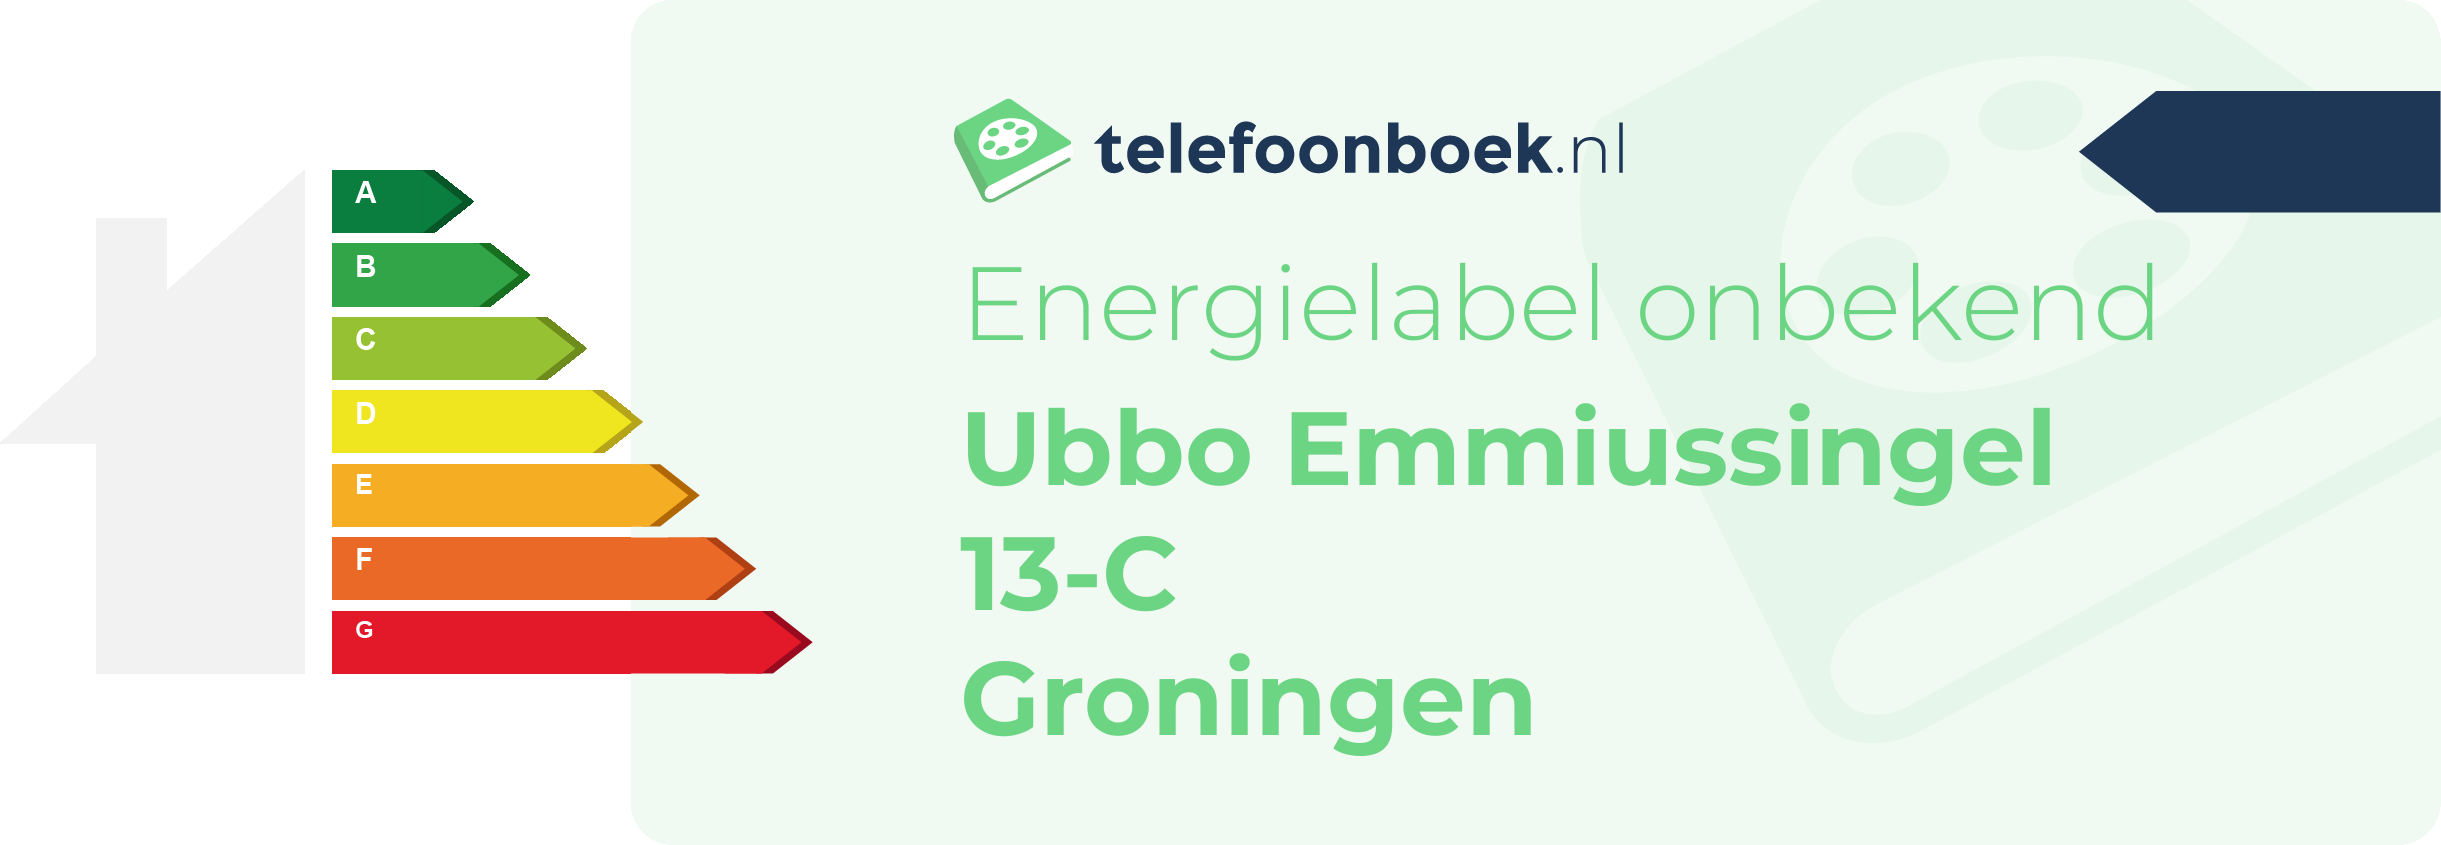 Energielabel Ubbo Emmiussingel 13-C Groningen